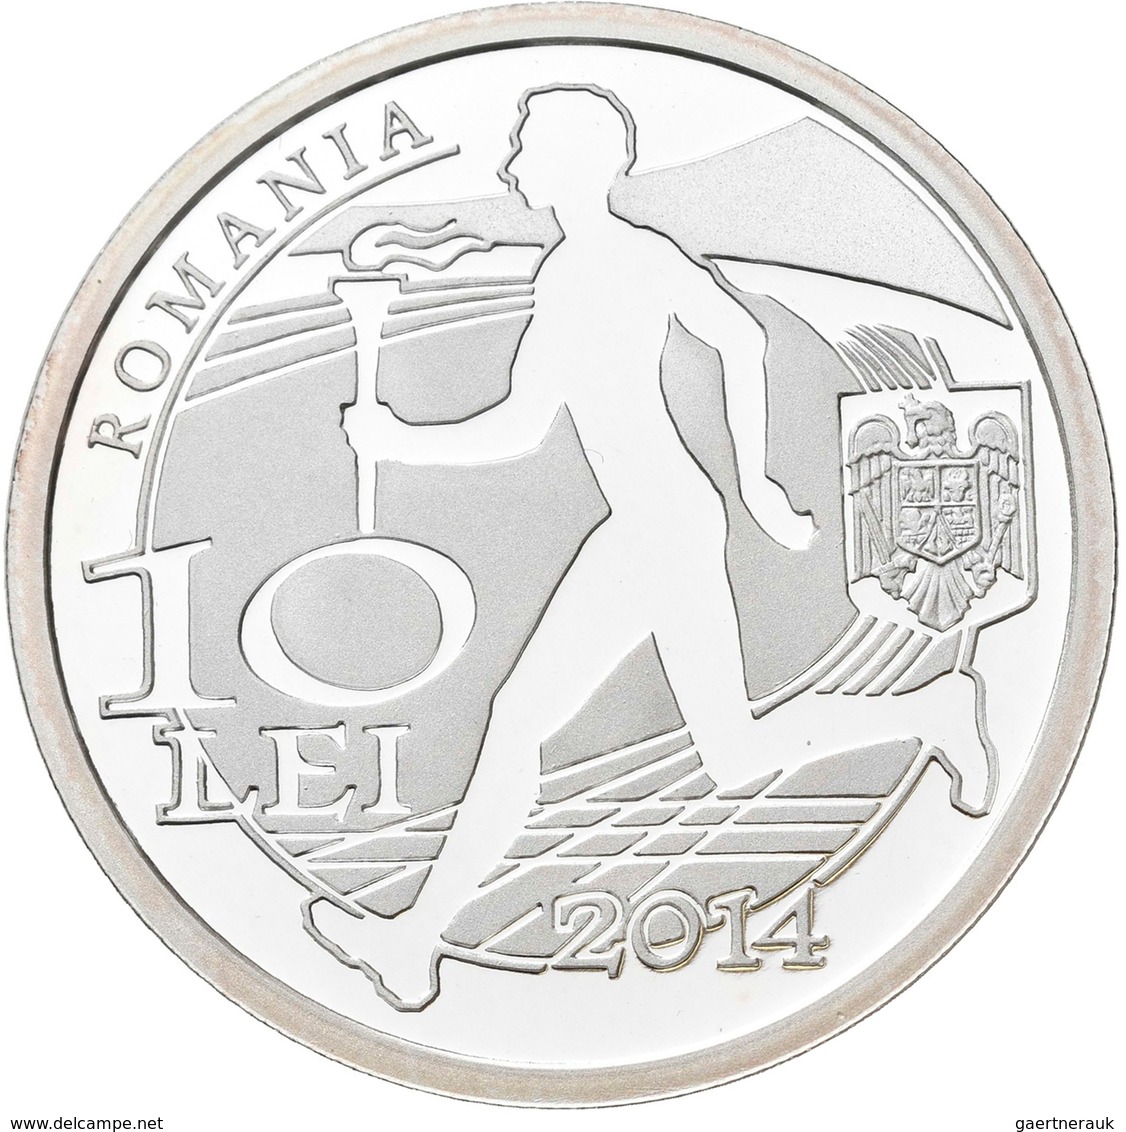 Rumänien: 10 Lei 2014, 100 Jahre Rumänisches Olympisches Kommitee. KM# N.b. 31,103 G (1 OZ), 999/100 - Romania